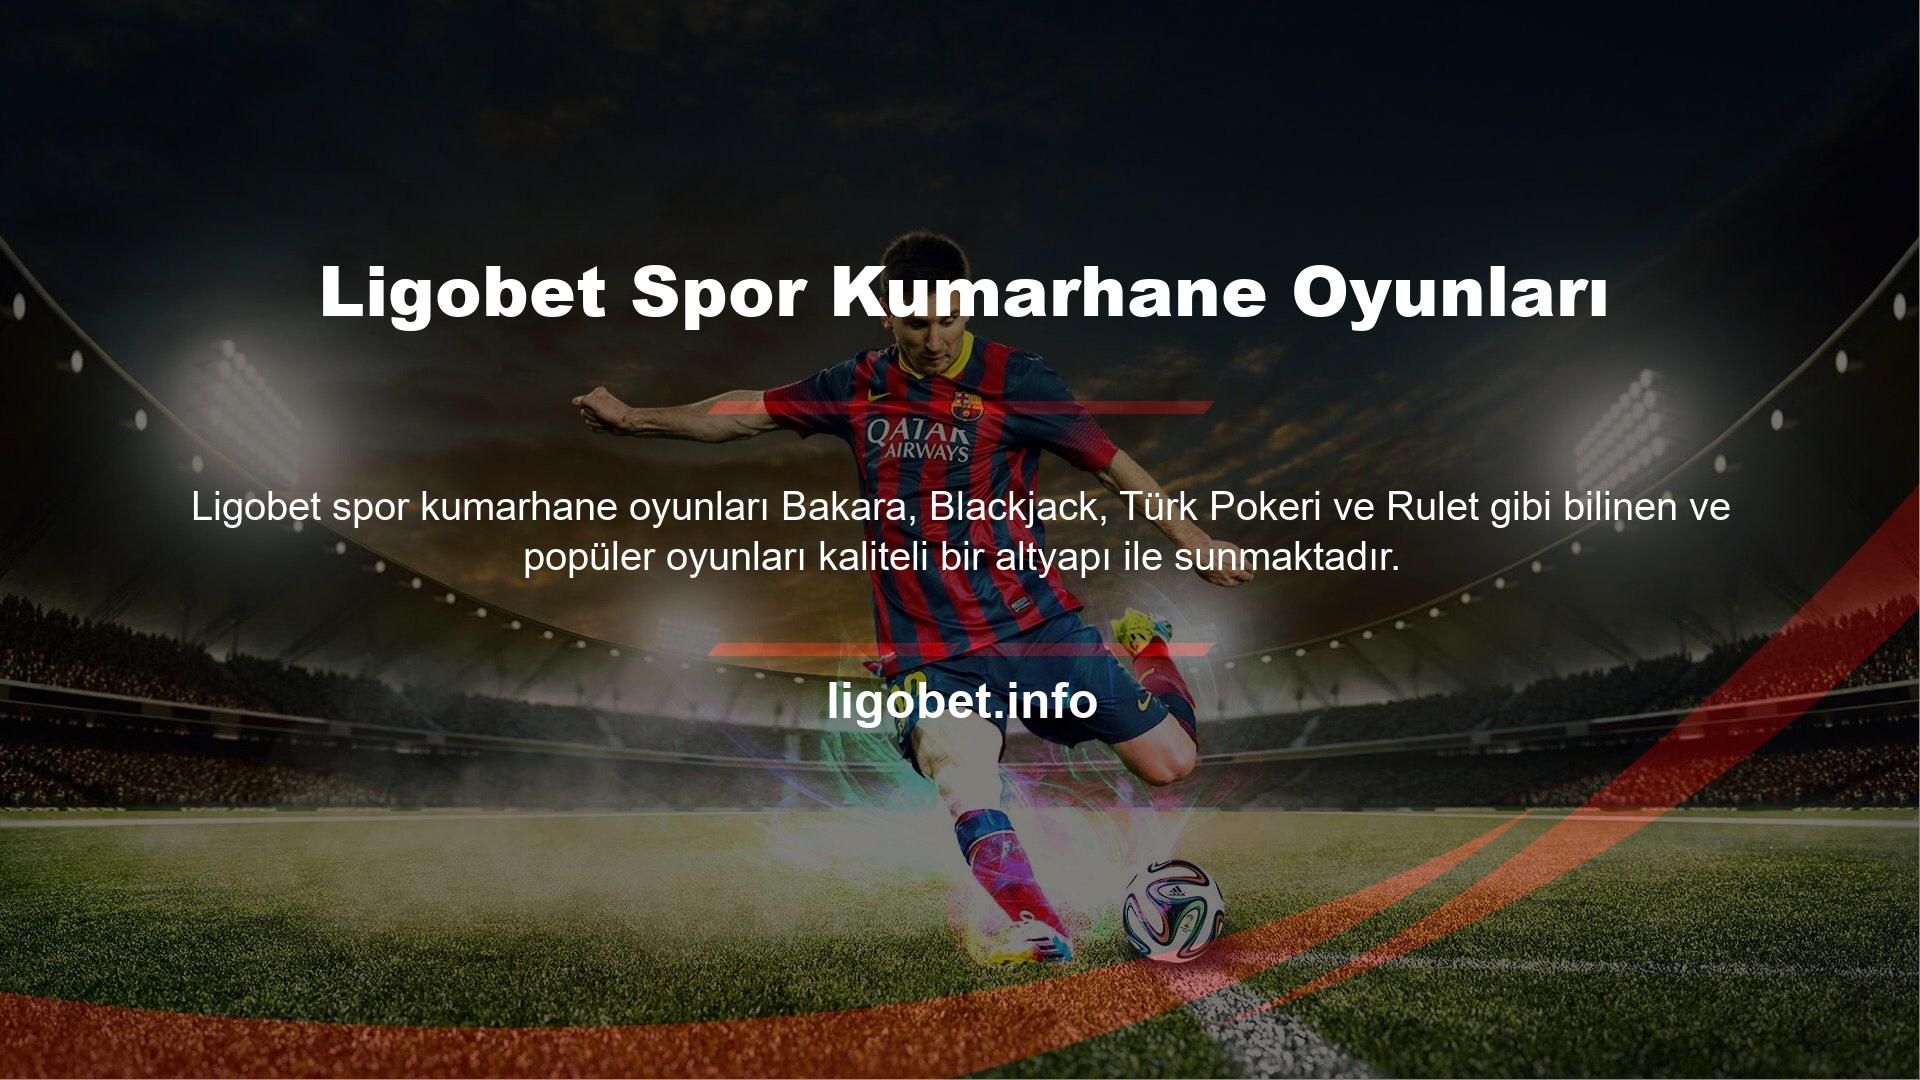 Ligobet Sports Casino Games'in Türk bayi seçeneği de bulunmakta olup, Türk oyun tutkunlarına Türkçe oynama seçeneği de sunmaktadır